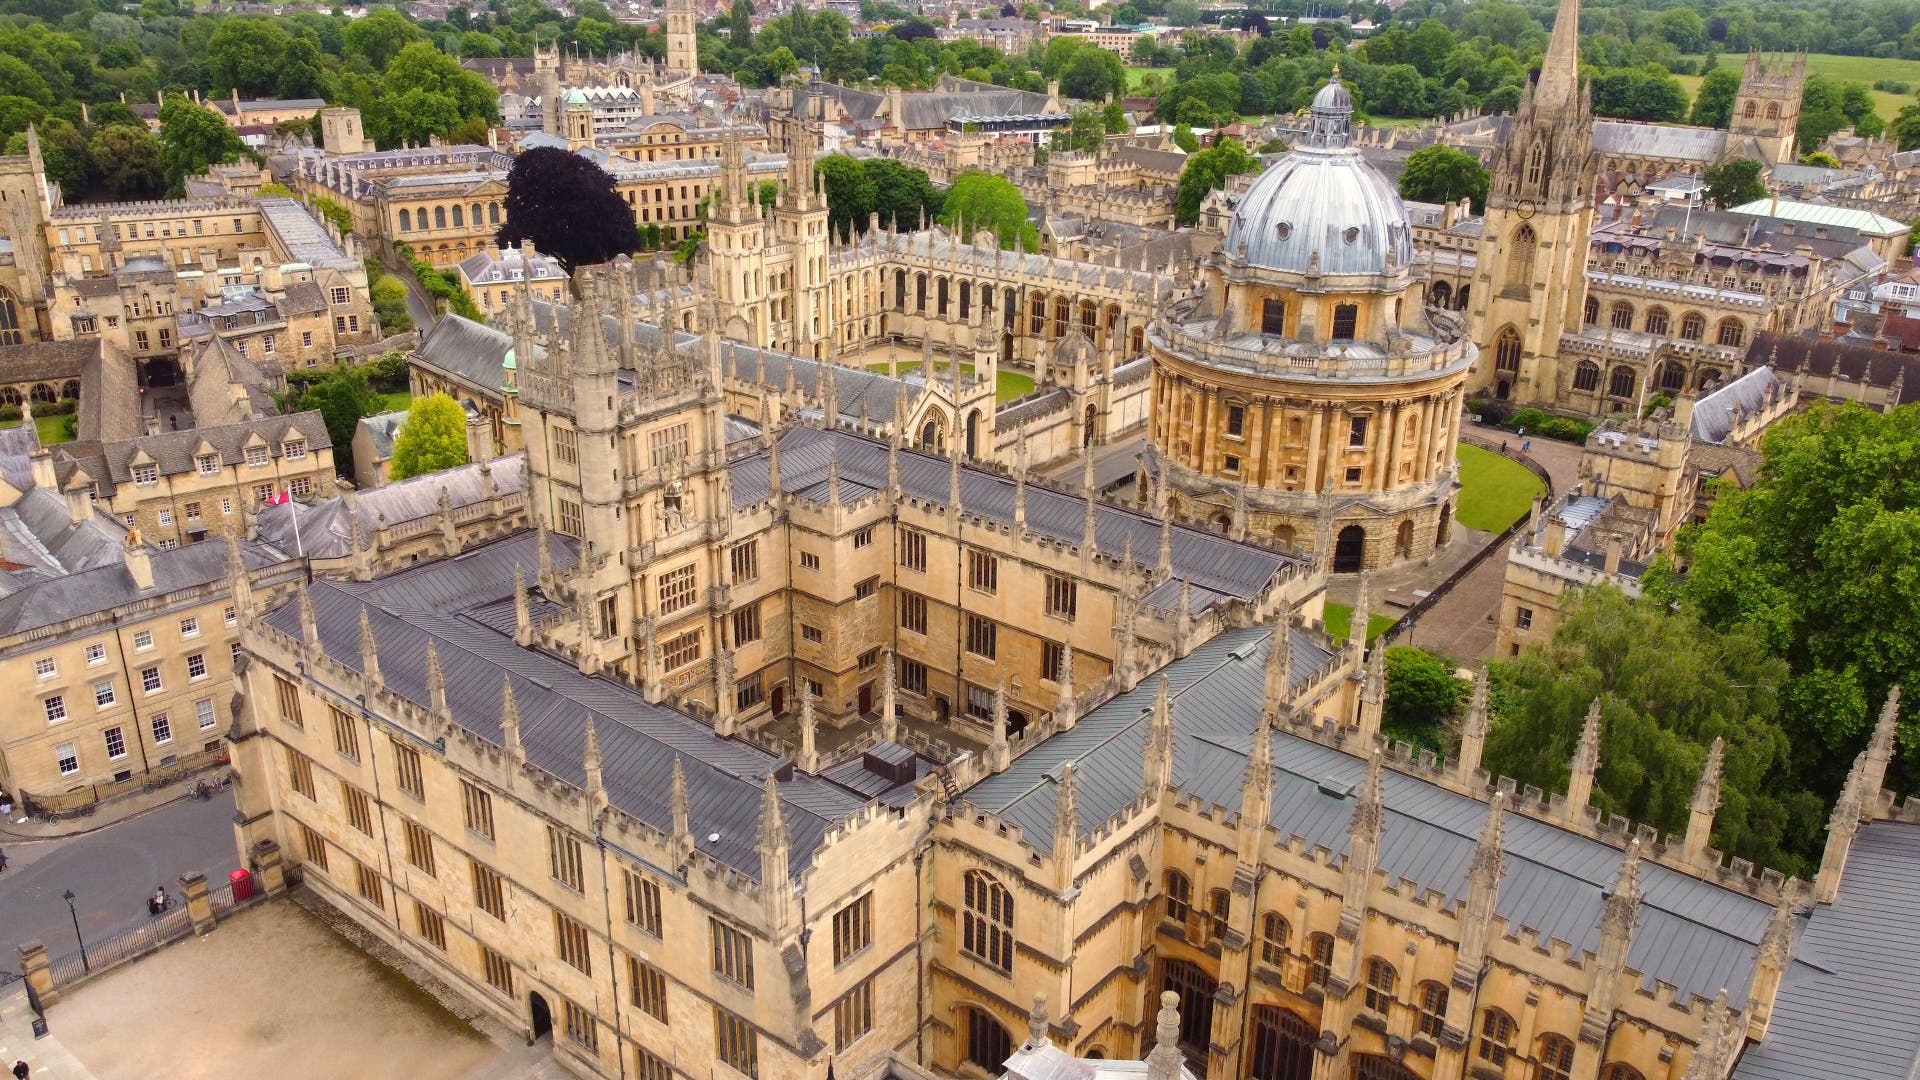 Luftbild der University of Oxford, auf dem auch die Radcliffe Camera und die Kirche St. Mary the Virgin zu sehen sind.